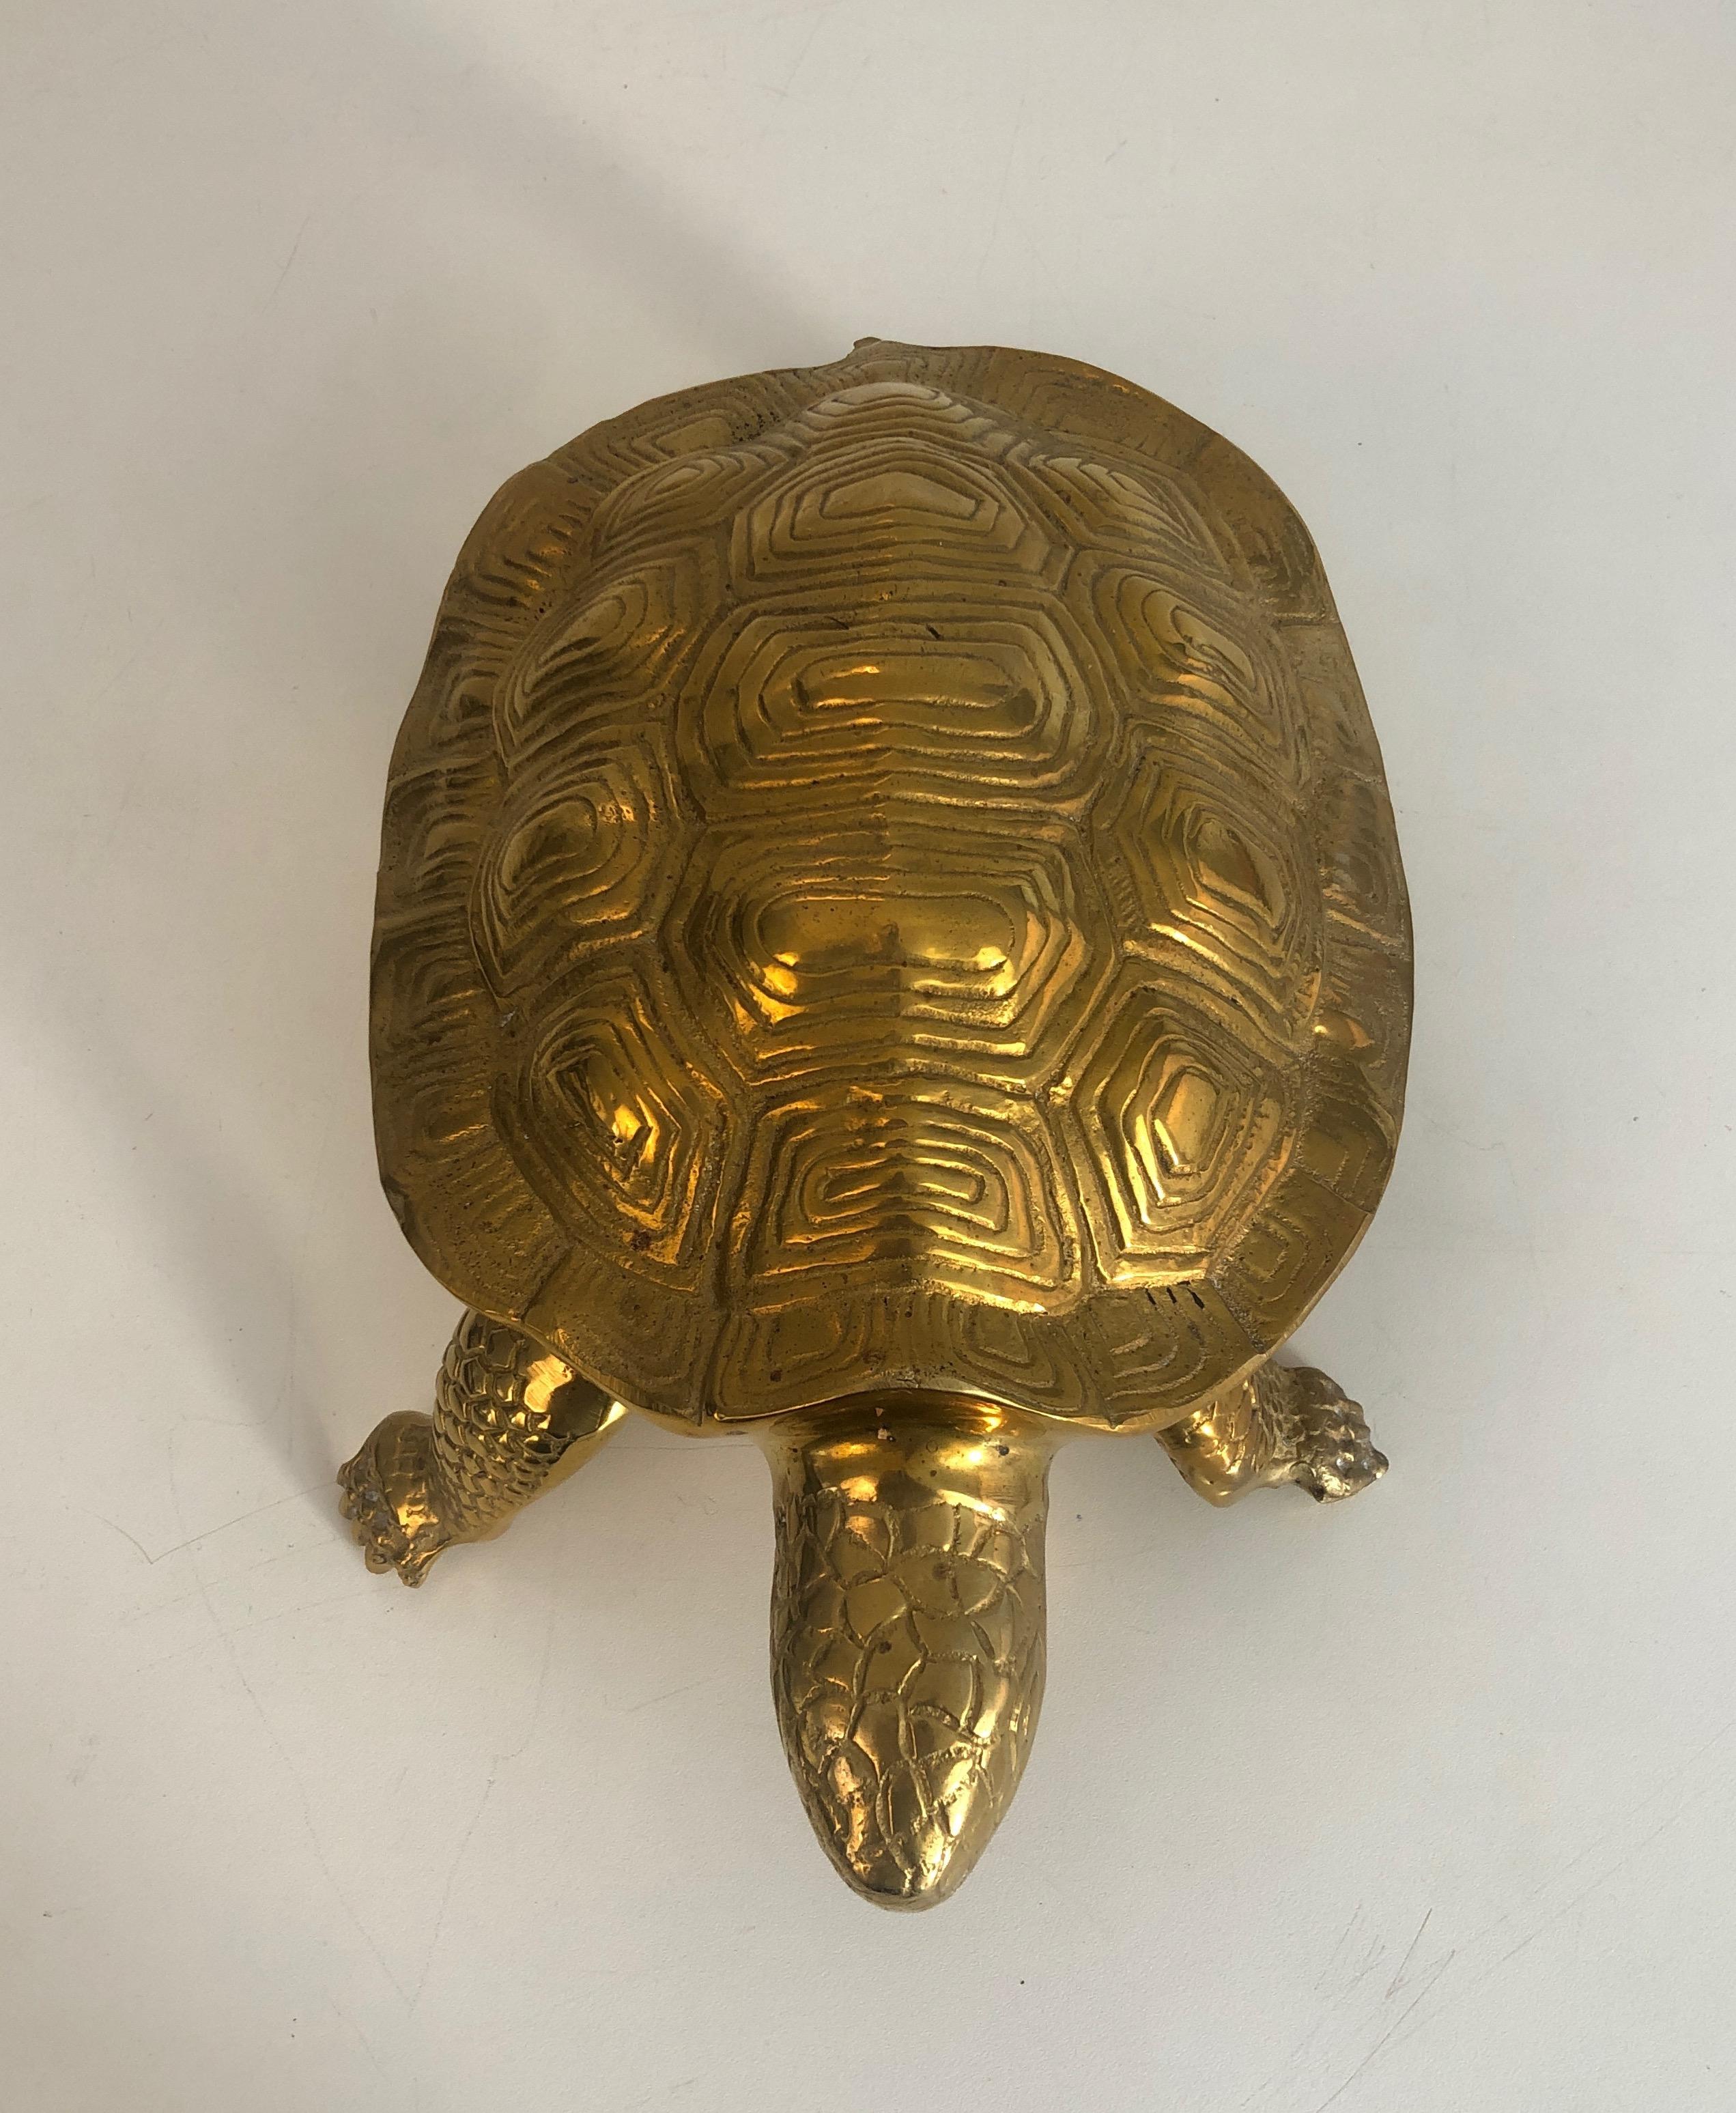 Cette jolie sculpture de tortue est fabriquée en laiton. Il s'agit d'une œuvre française, datant d'environ 1970.